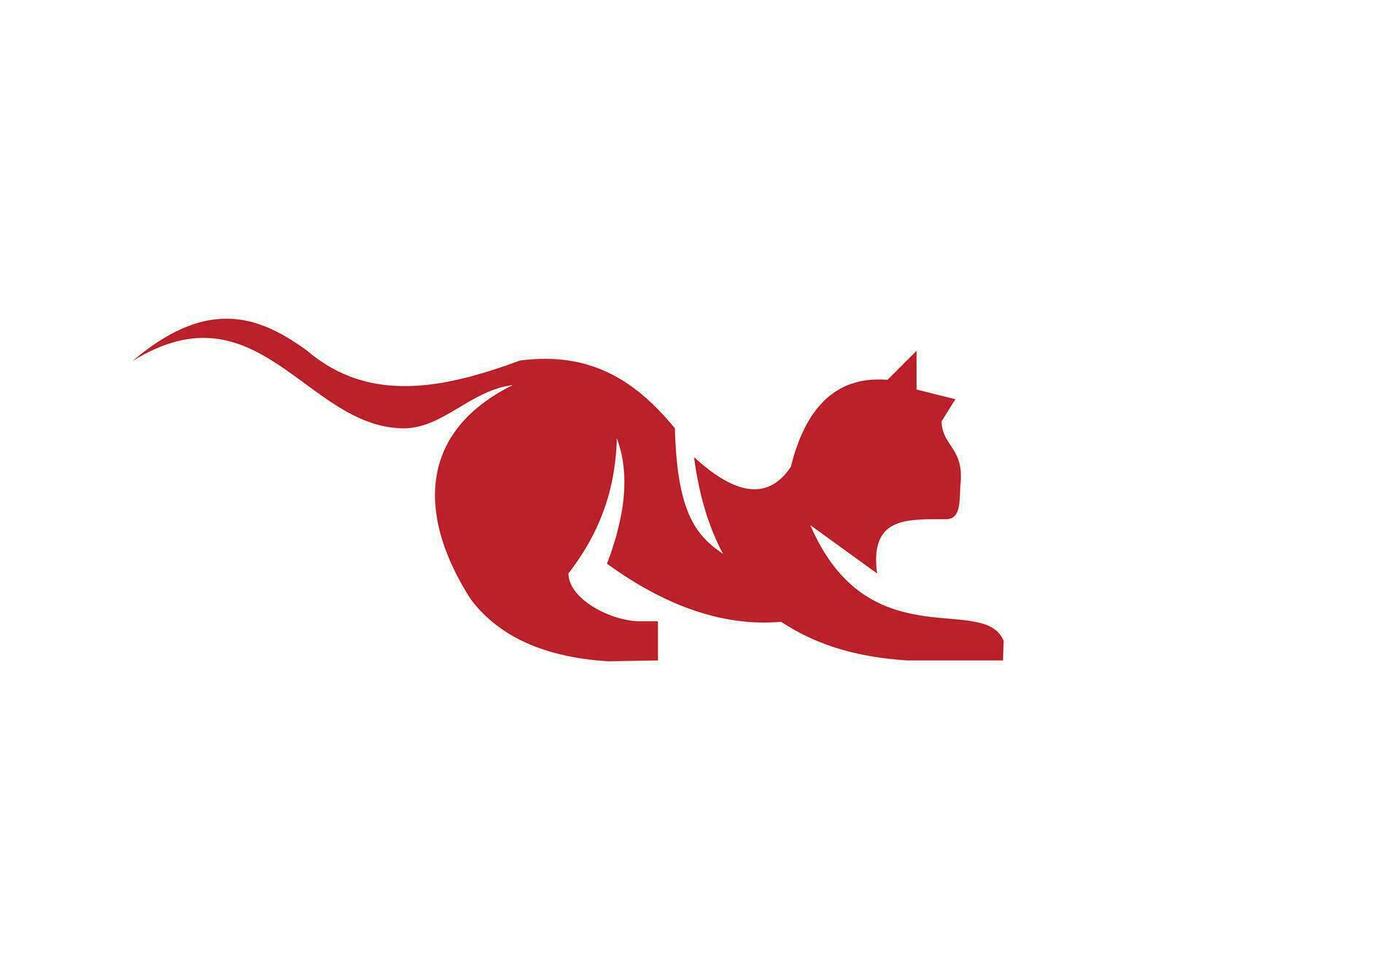 esta es un gato logo diseño para tu negocio vector